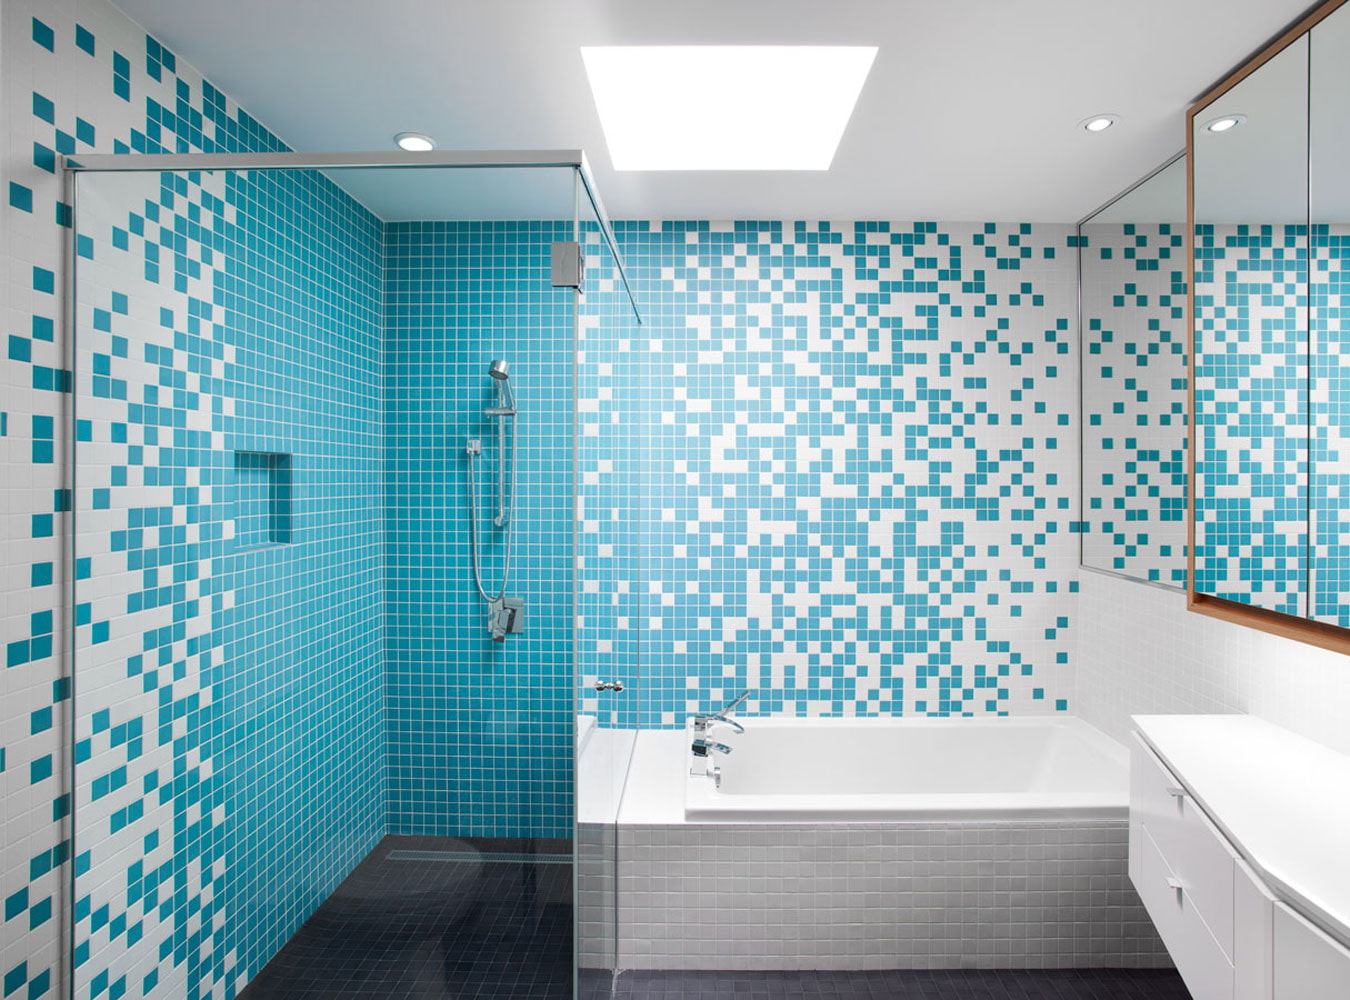 мозаика плитка в интерьере ванной